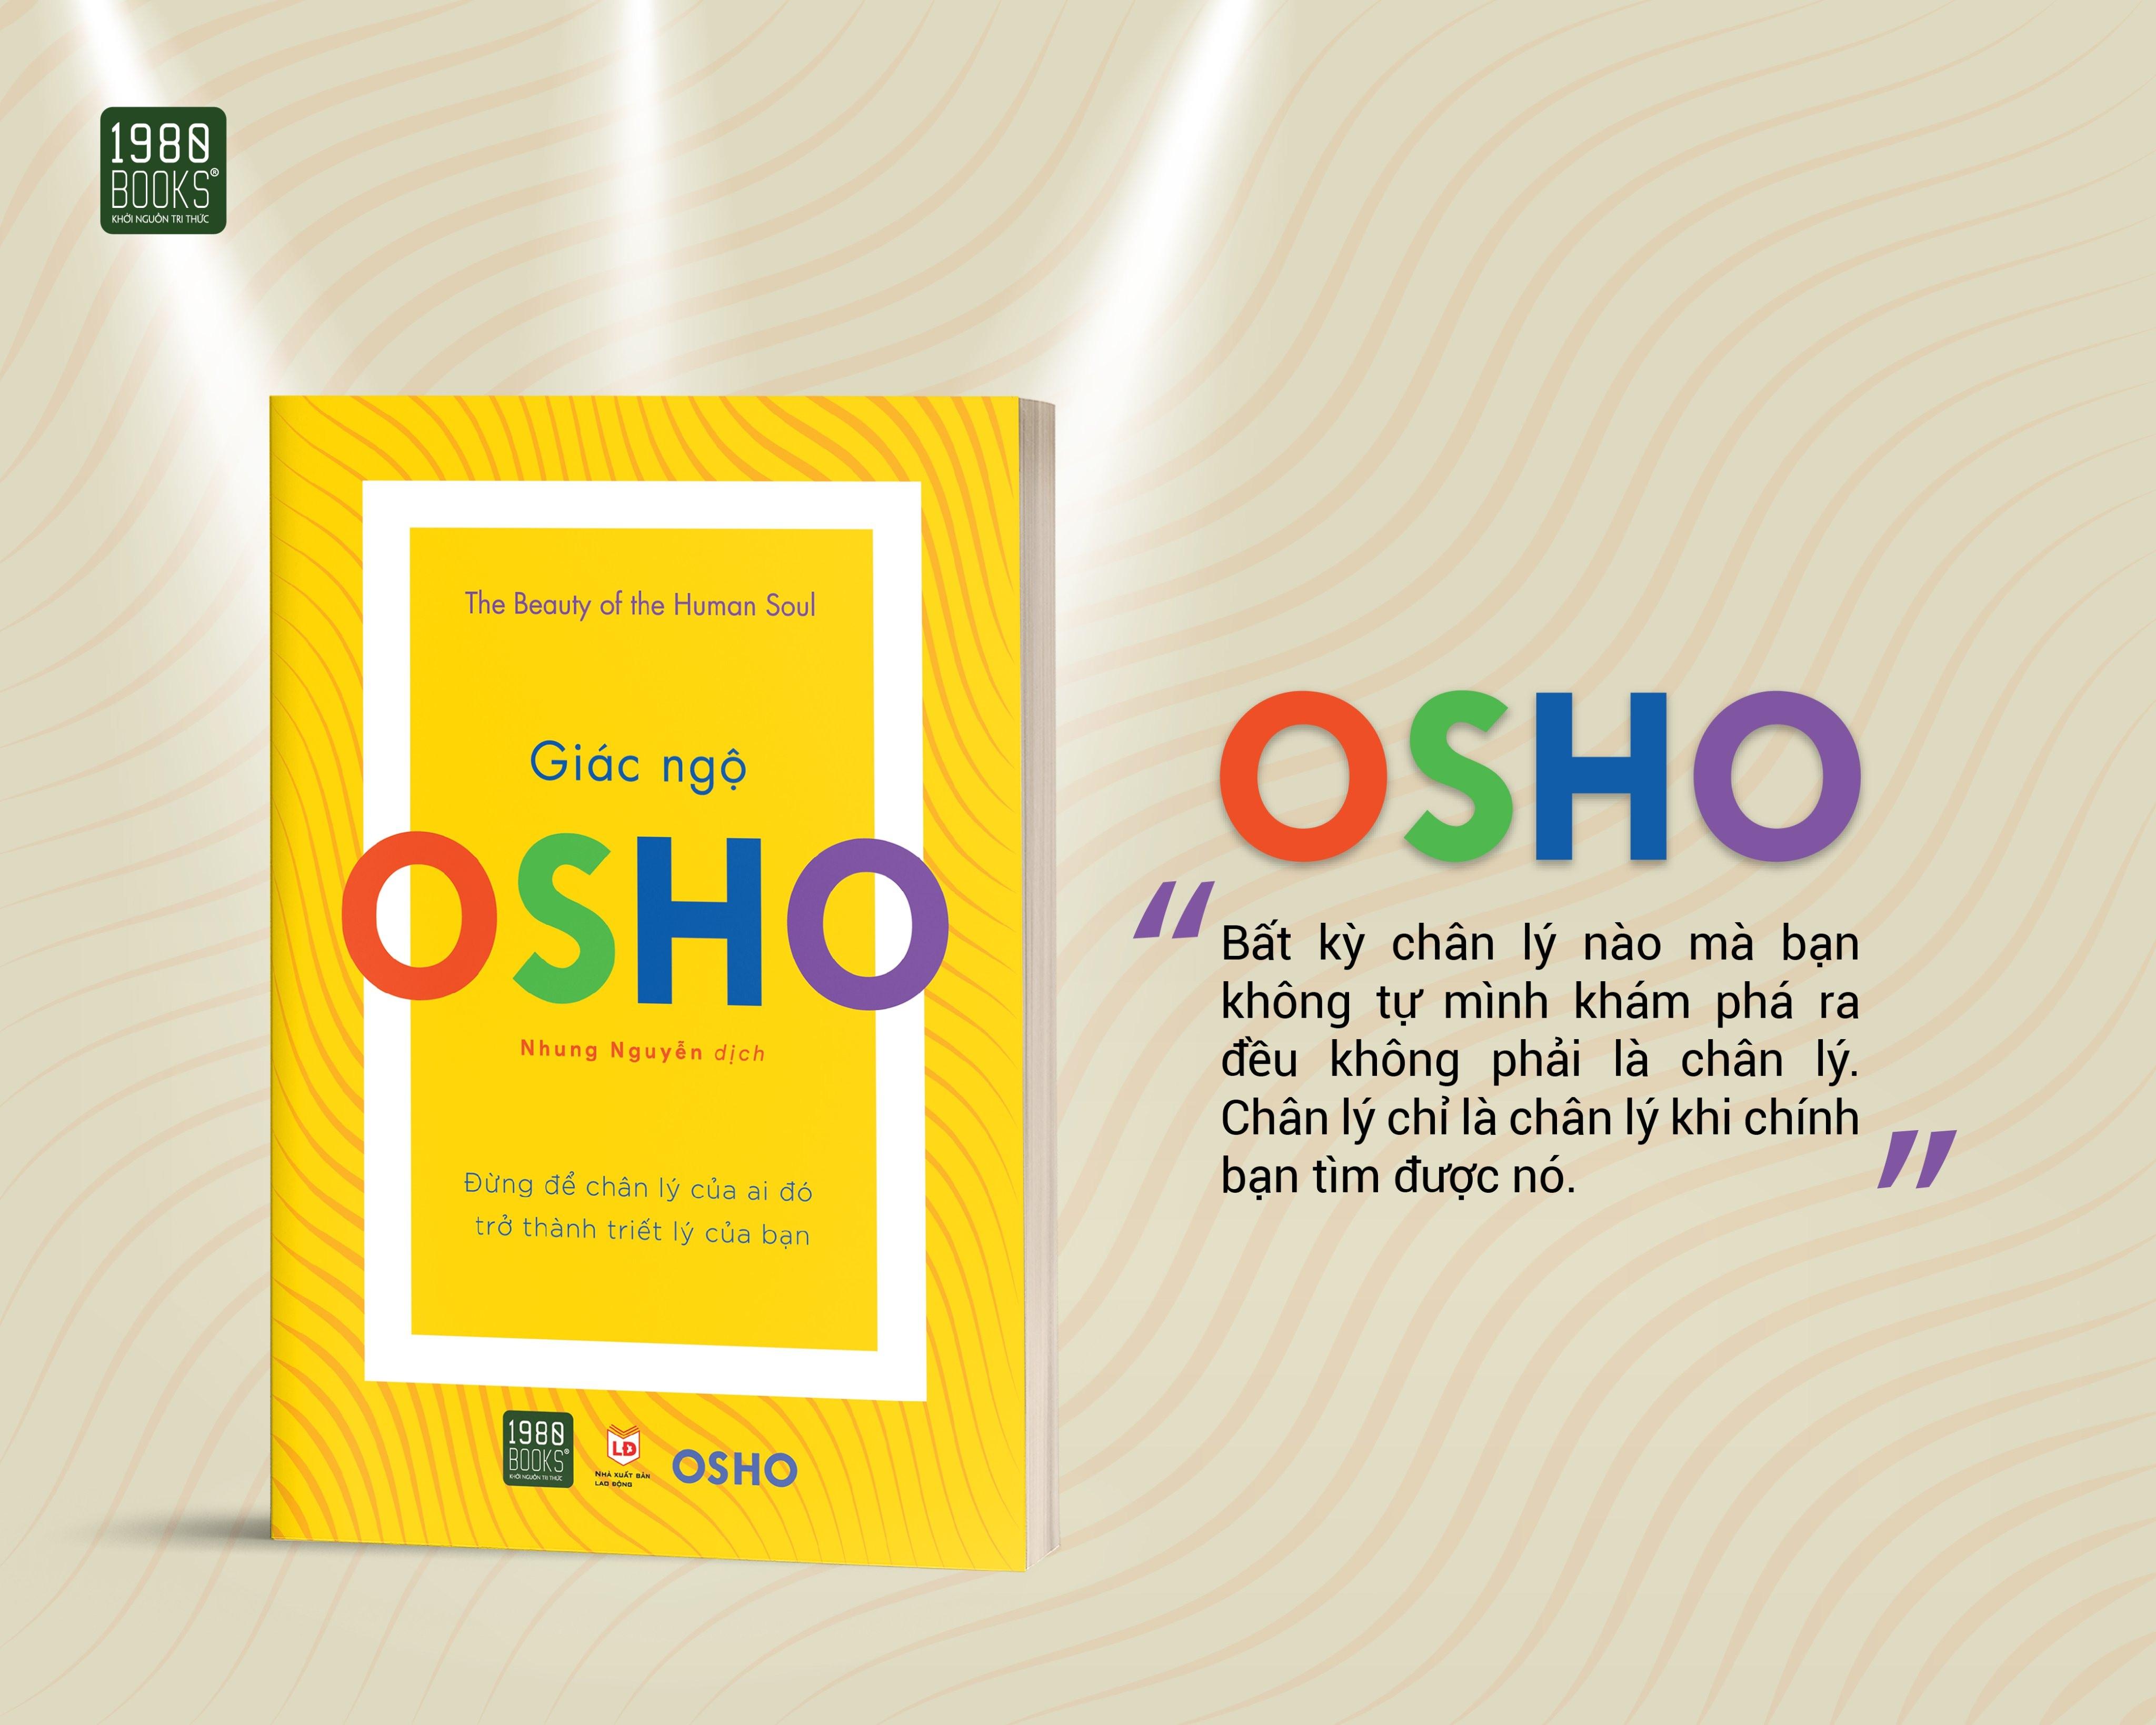 Osho - Giác Ngộ - Đừng Để Chân Lý Của Ai Đó Trở Thành Triết Lý Của Bạn